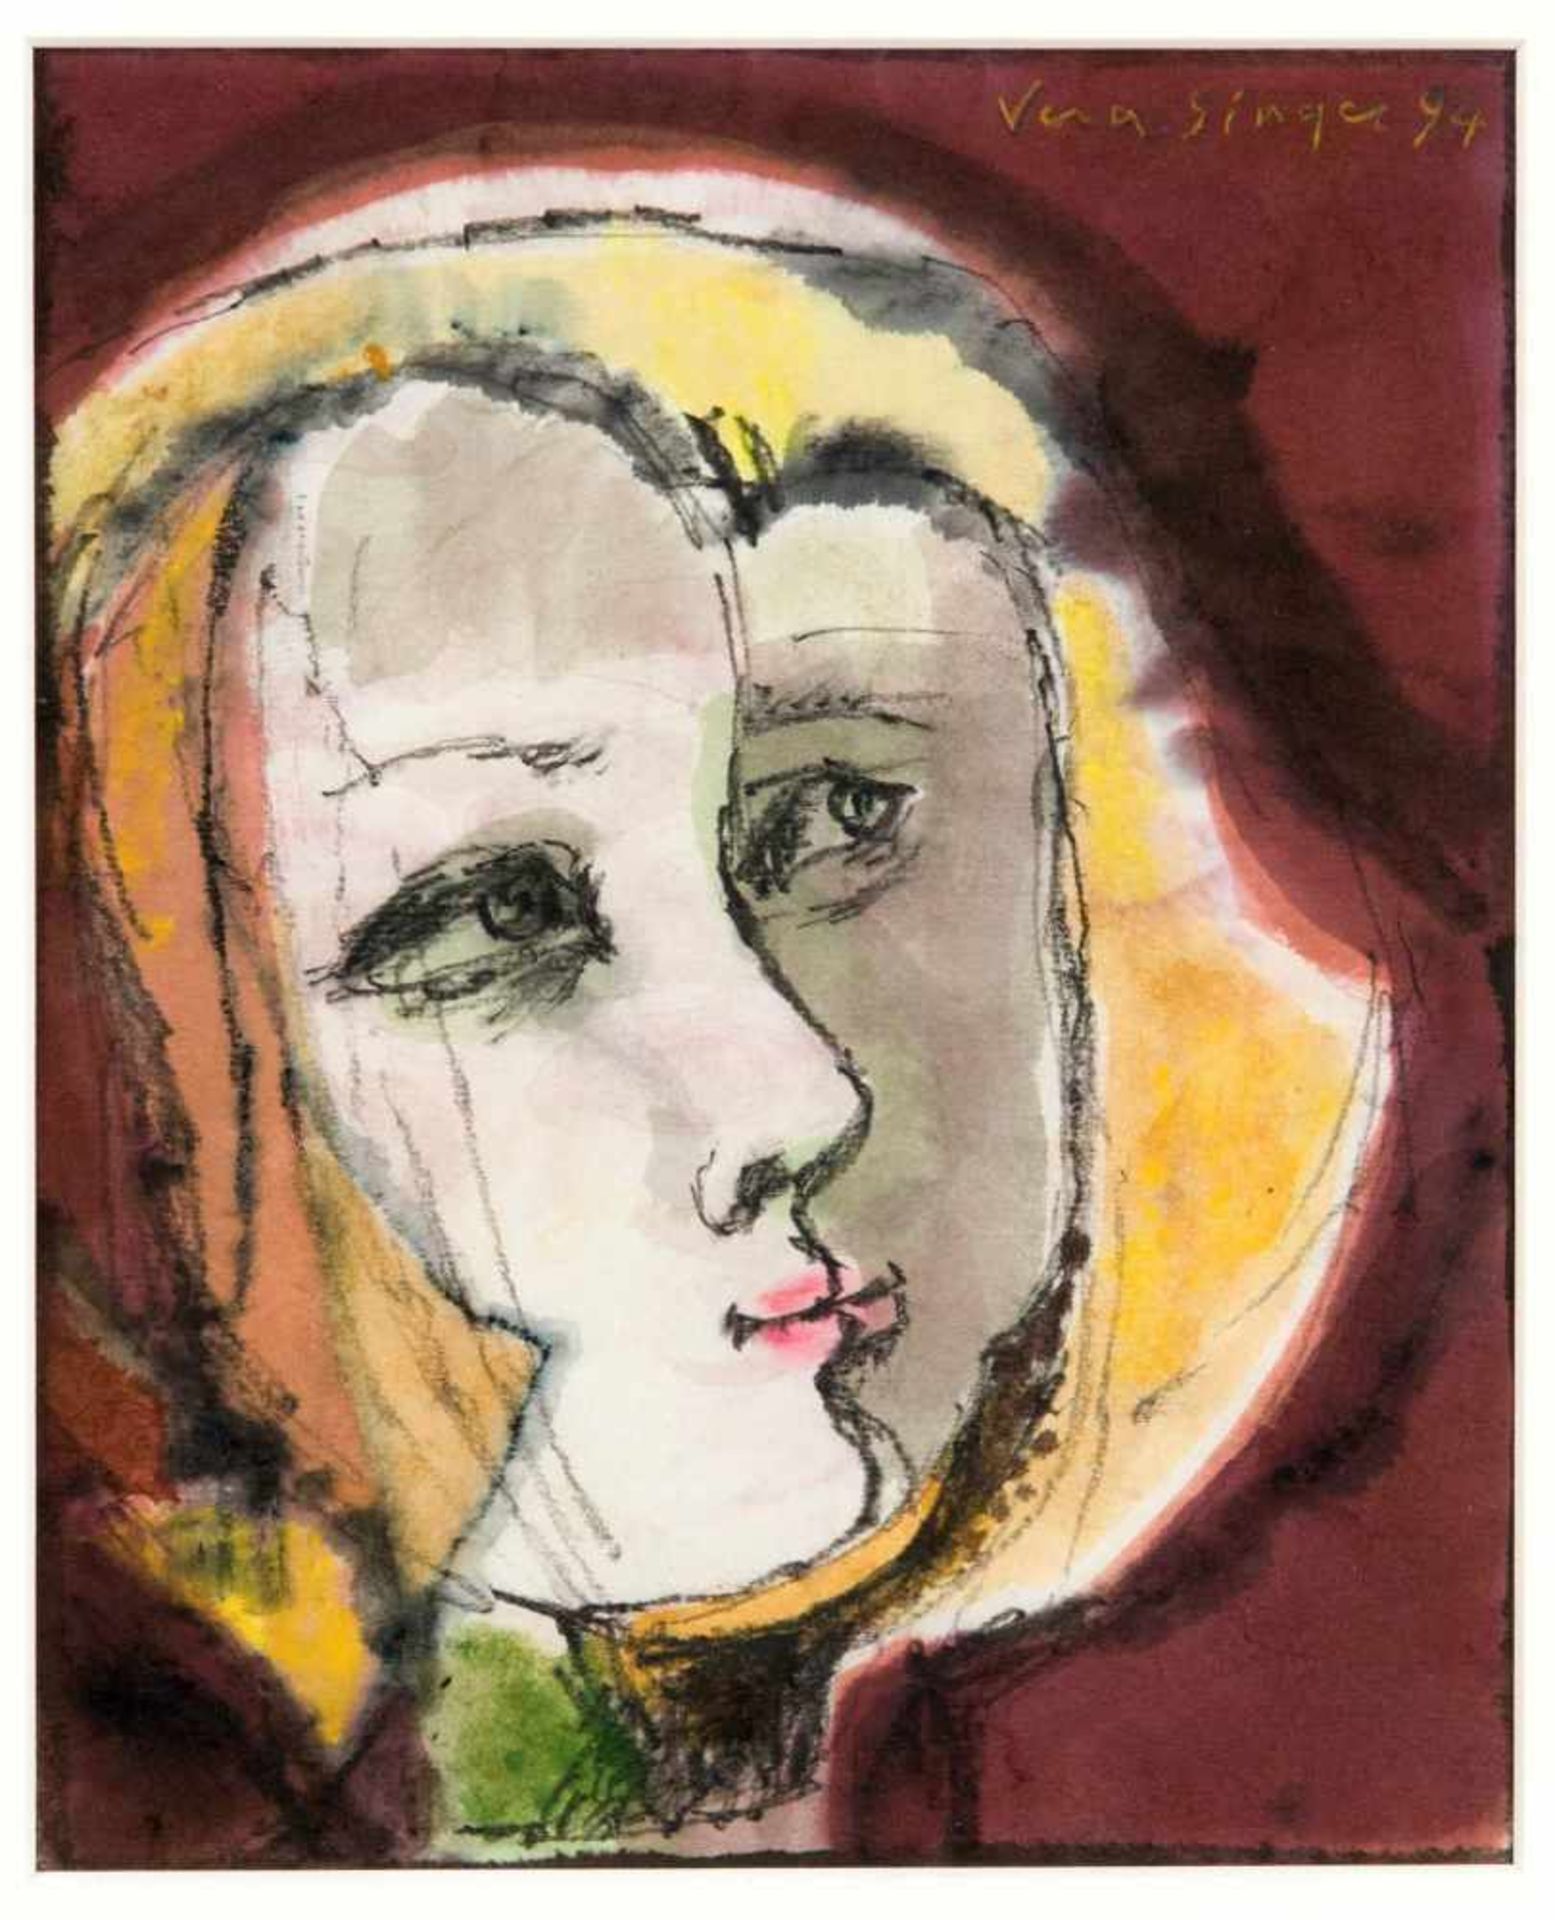 Vera Singer (1927-2017), Berliner Künstlerin, emigrierte 1933 nach Frankreich und 1942 indie